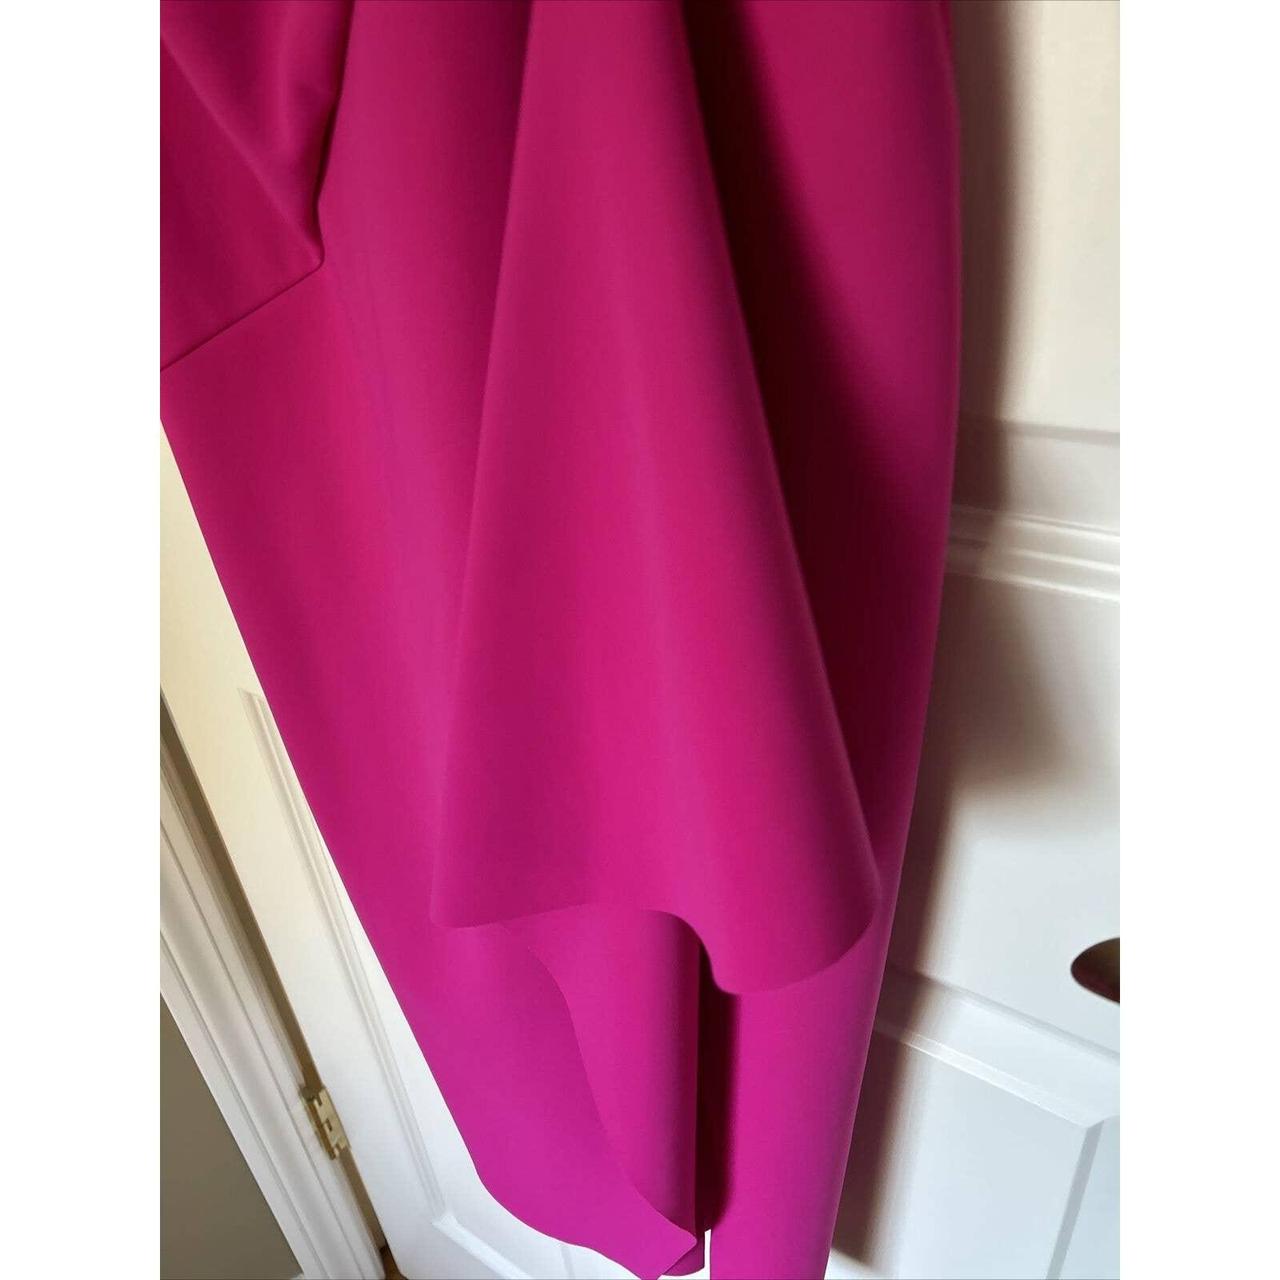 Chiara Boni La Petite Robe Women's Pink Dress (4)